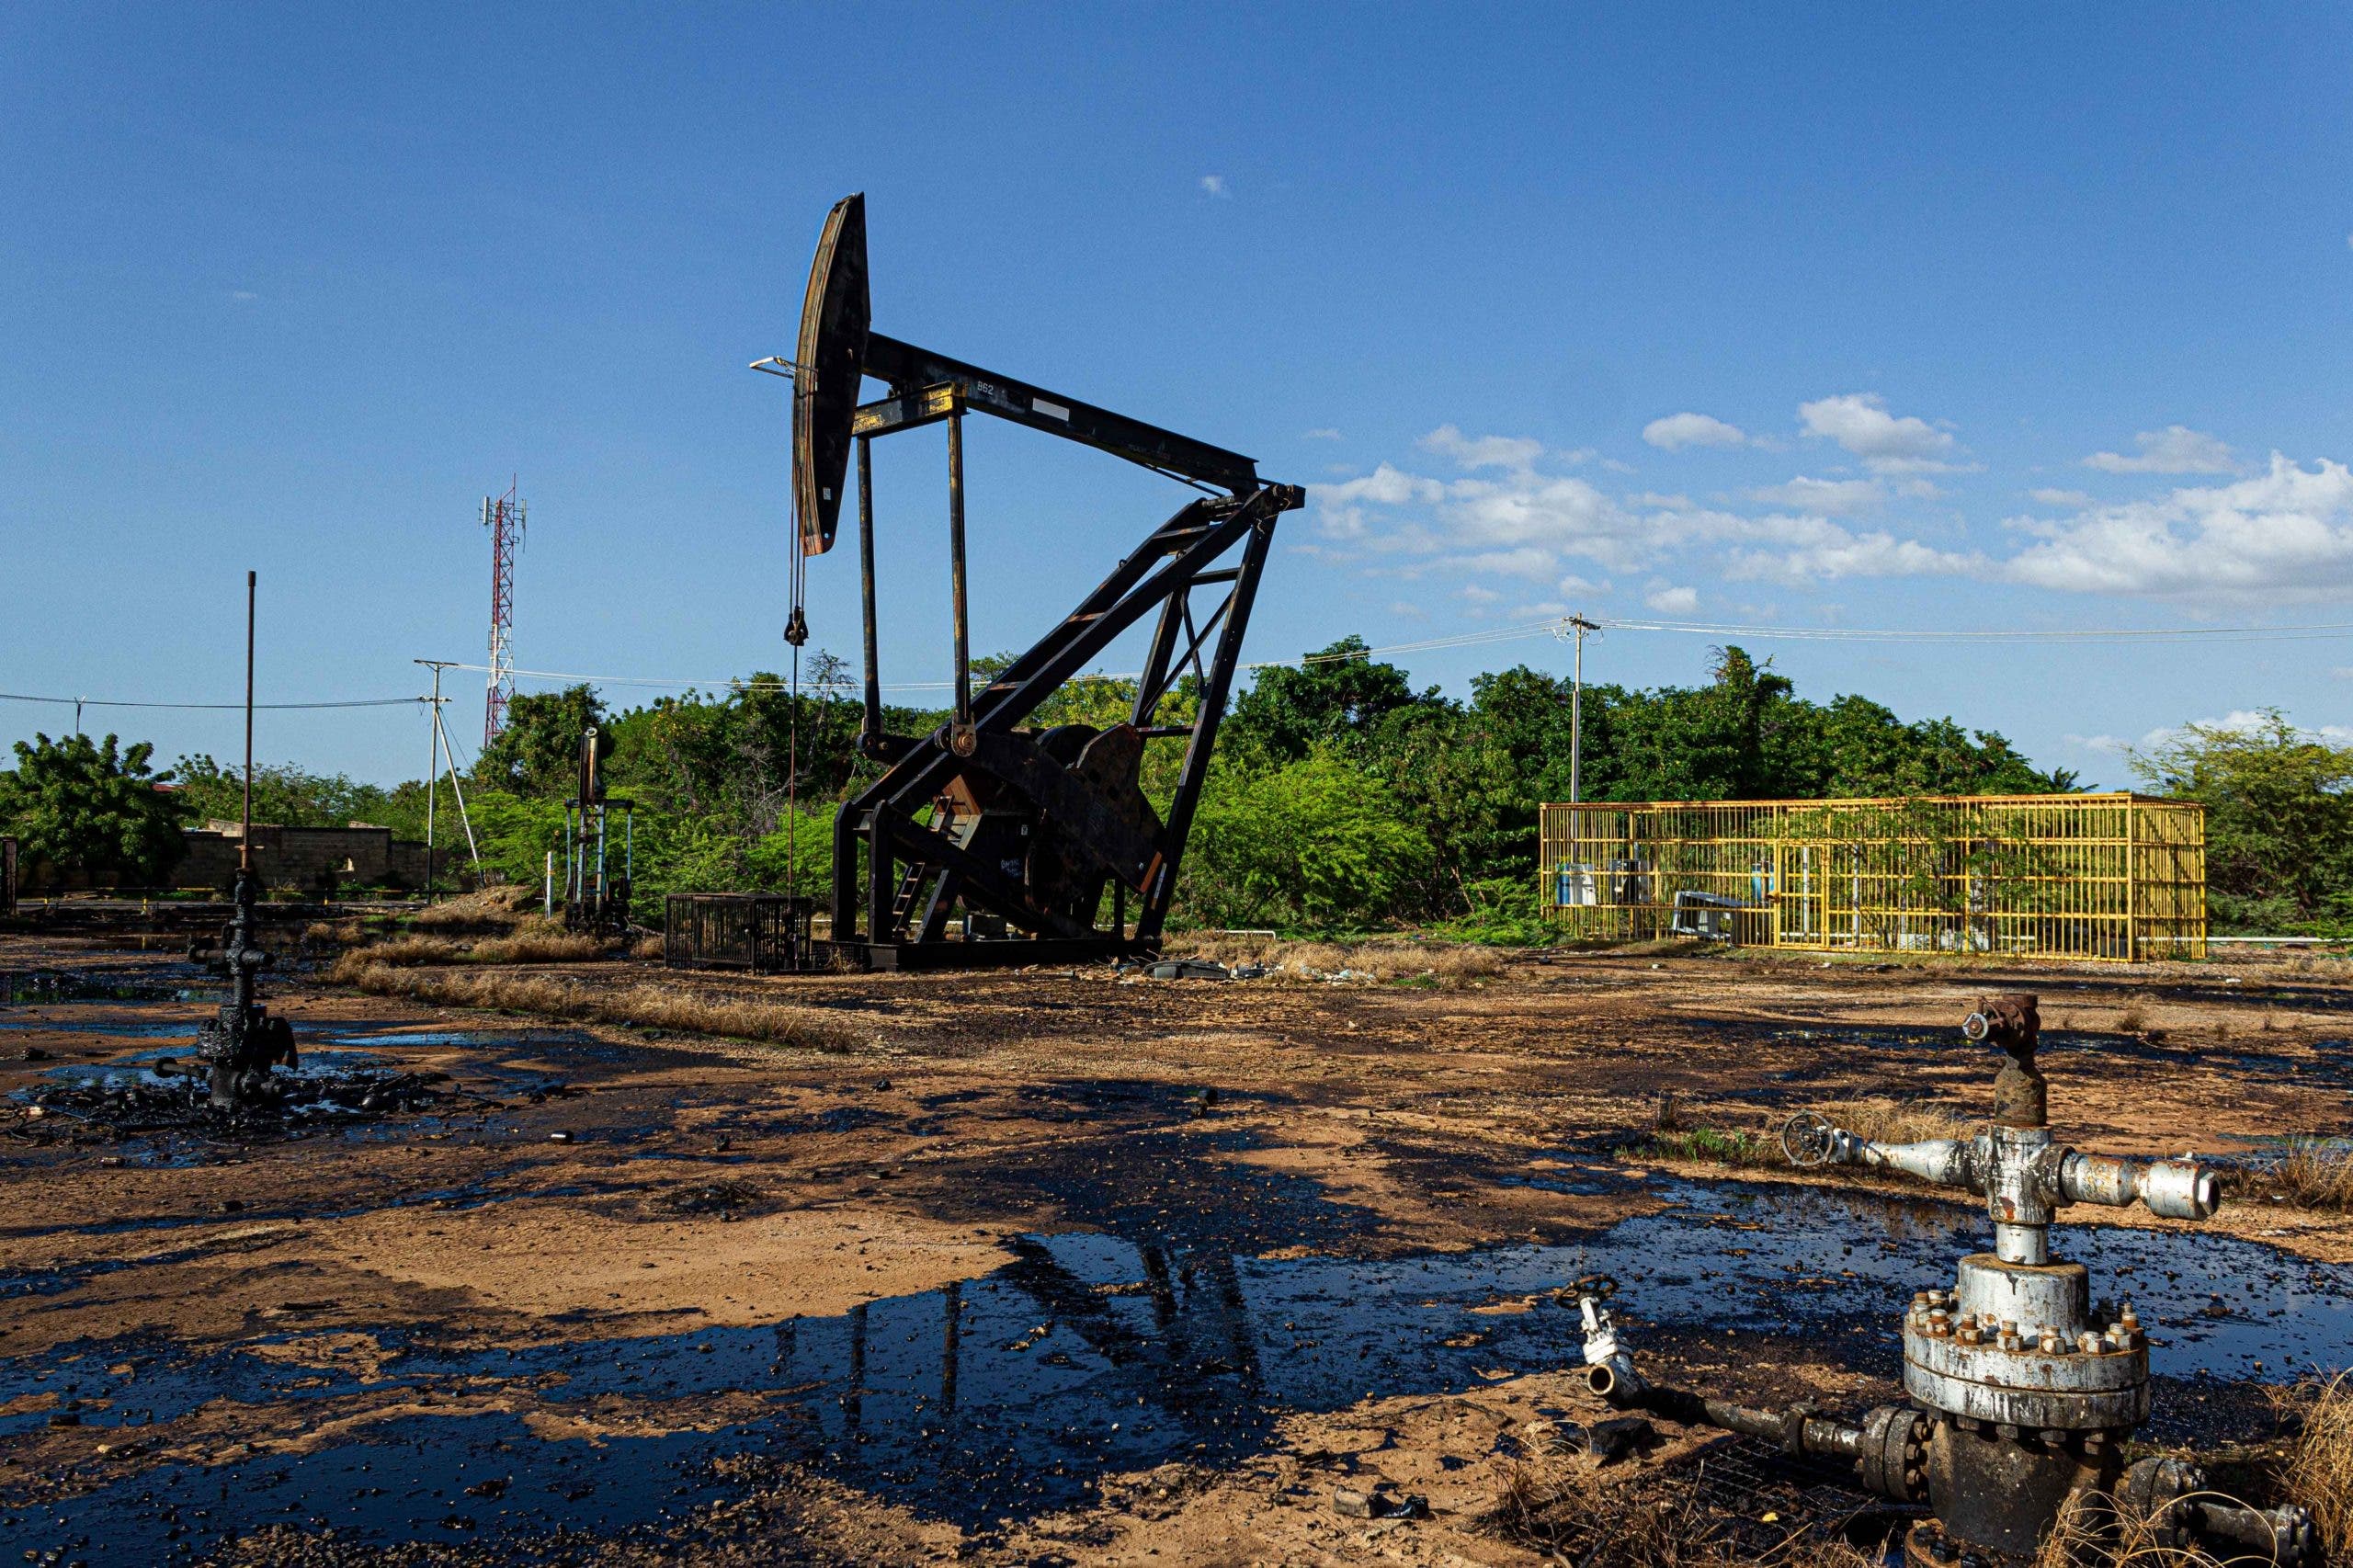 El petróleo de Texas abre con una bajada del 0,88 %, hasta 114,29 dólares